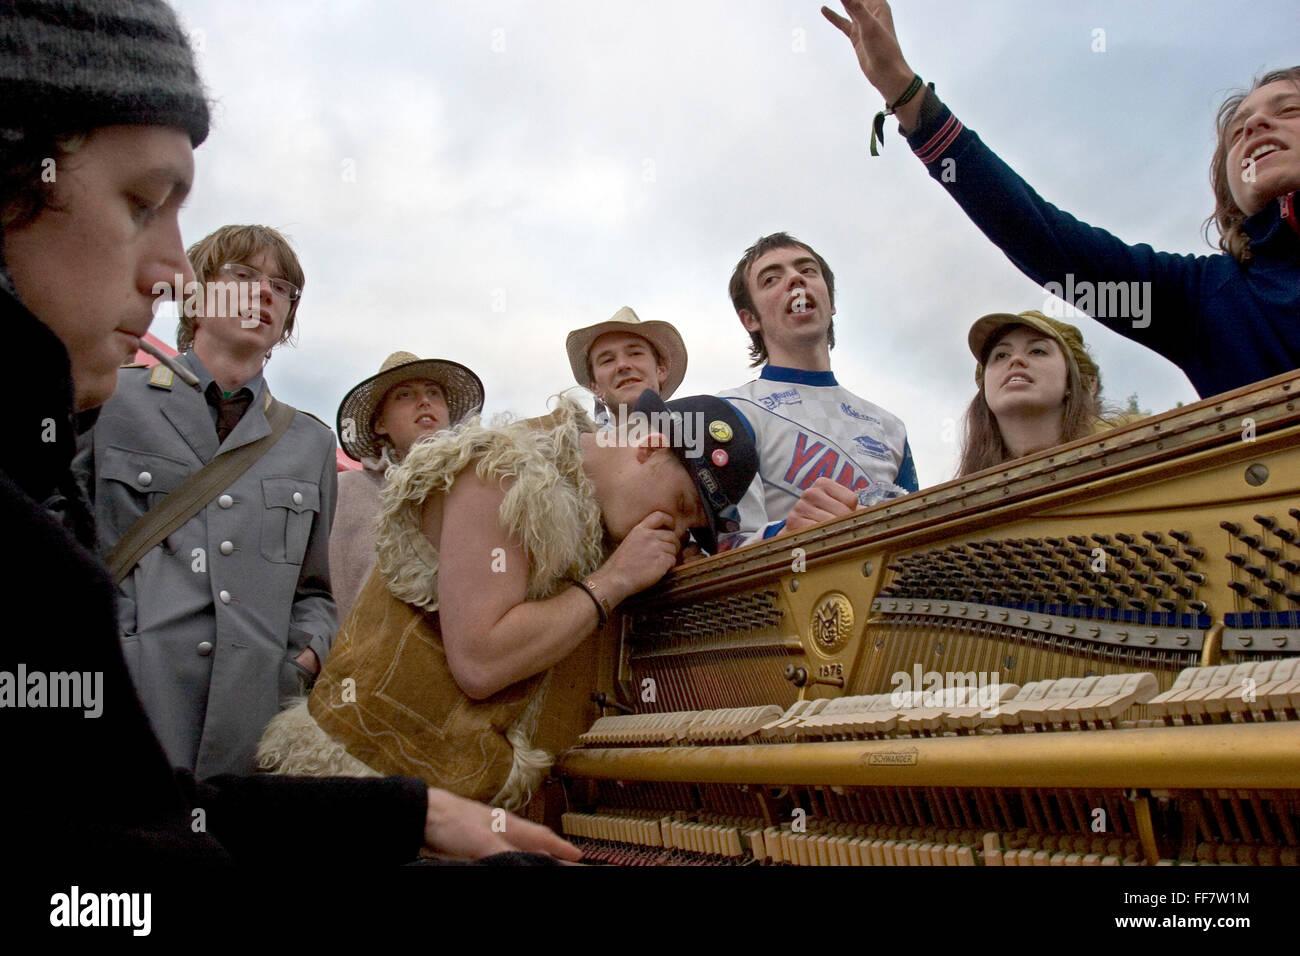 Glastonbury Festival Besucher feiern in das Morgenlicht in Unbestimmtheit verloren. Ein Mann spielt Klavier, Menschen singen und der Mann im mittleren schnaufend Koks aus dem Klavier. Stockfoto